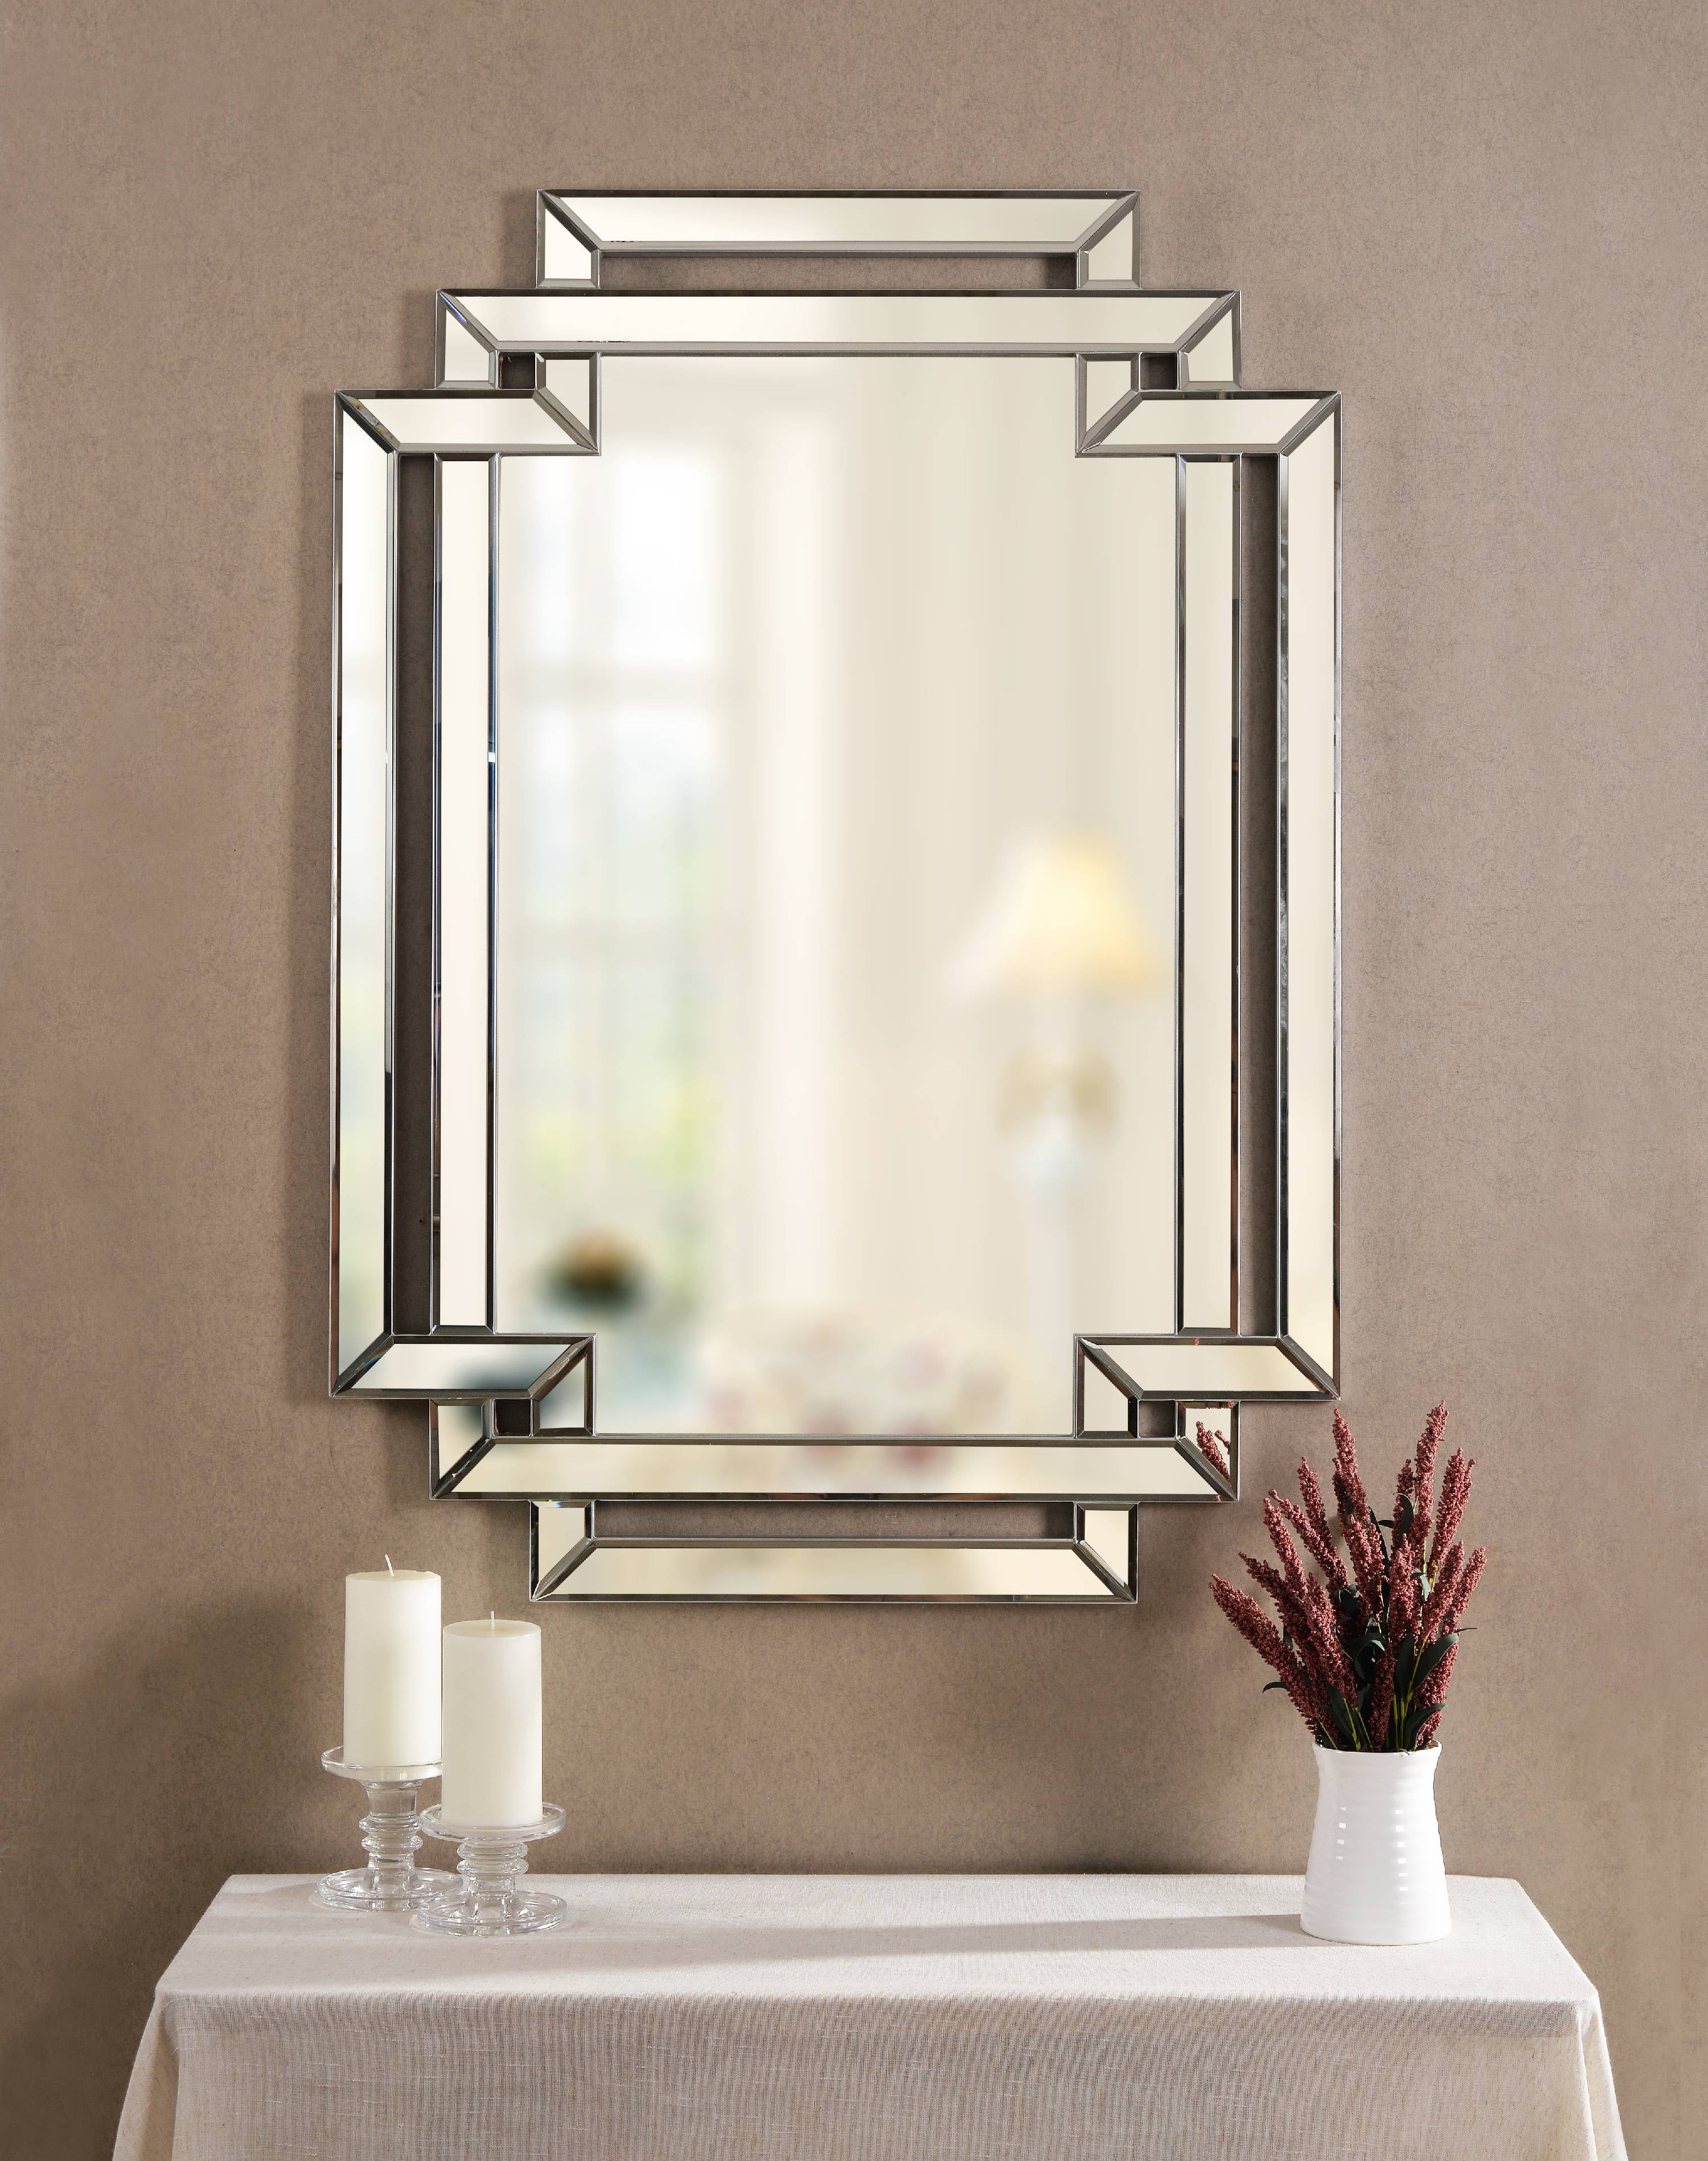 Linas 44 Wall Mirror Com, 44 Inch Wide Vanity Mirror